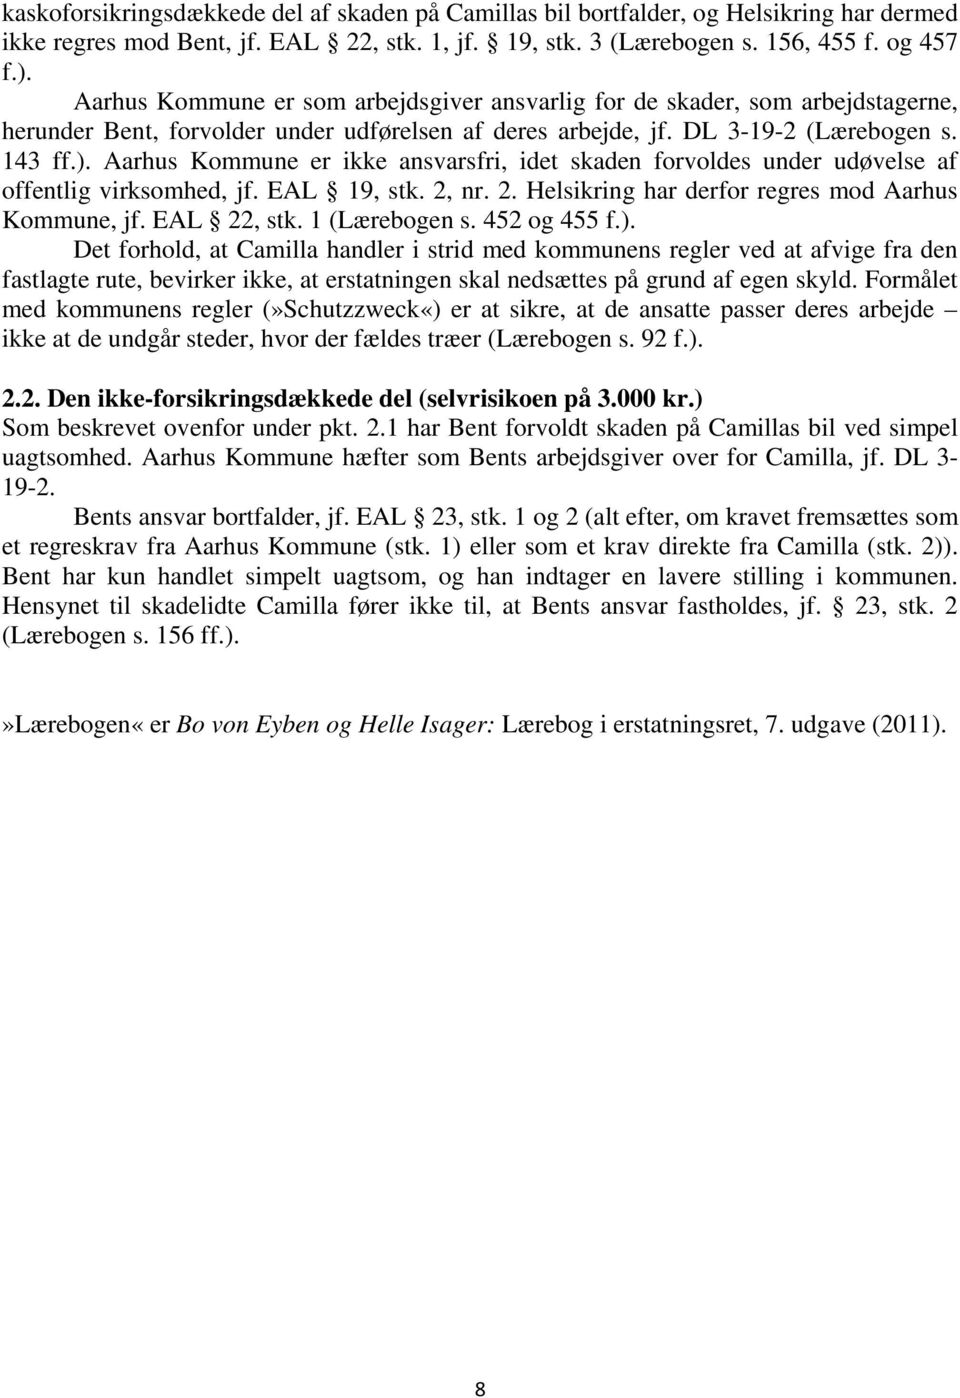 Aarhus Kommune er ikke ansvarsfri, idet skaden forvoldes under udøvelse af offentlig virksomhed, jf. EAL 19, stk. 2, nr. 2. Helsikring har derfor regres mod Aarhus Kommune, jf. EAL 22, stk.